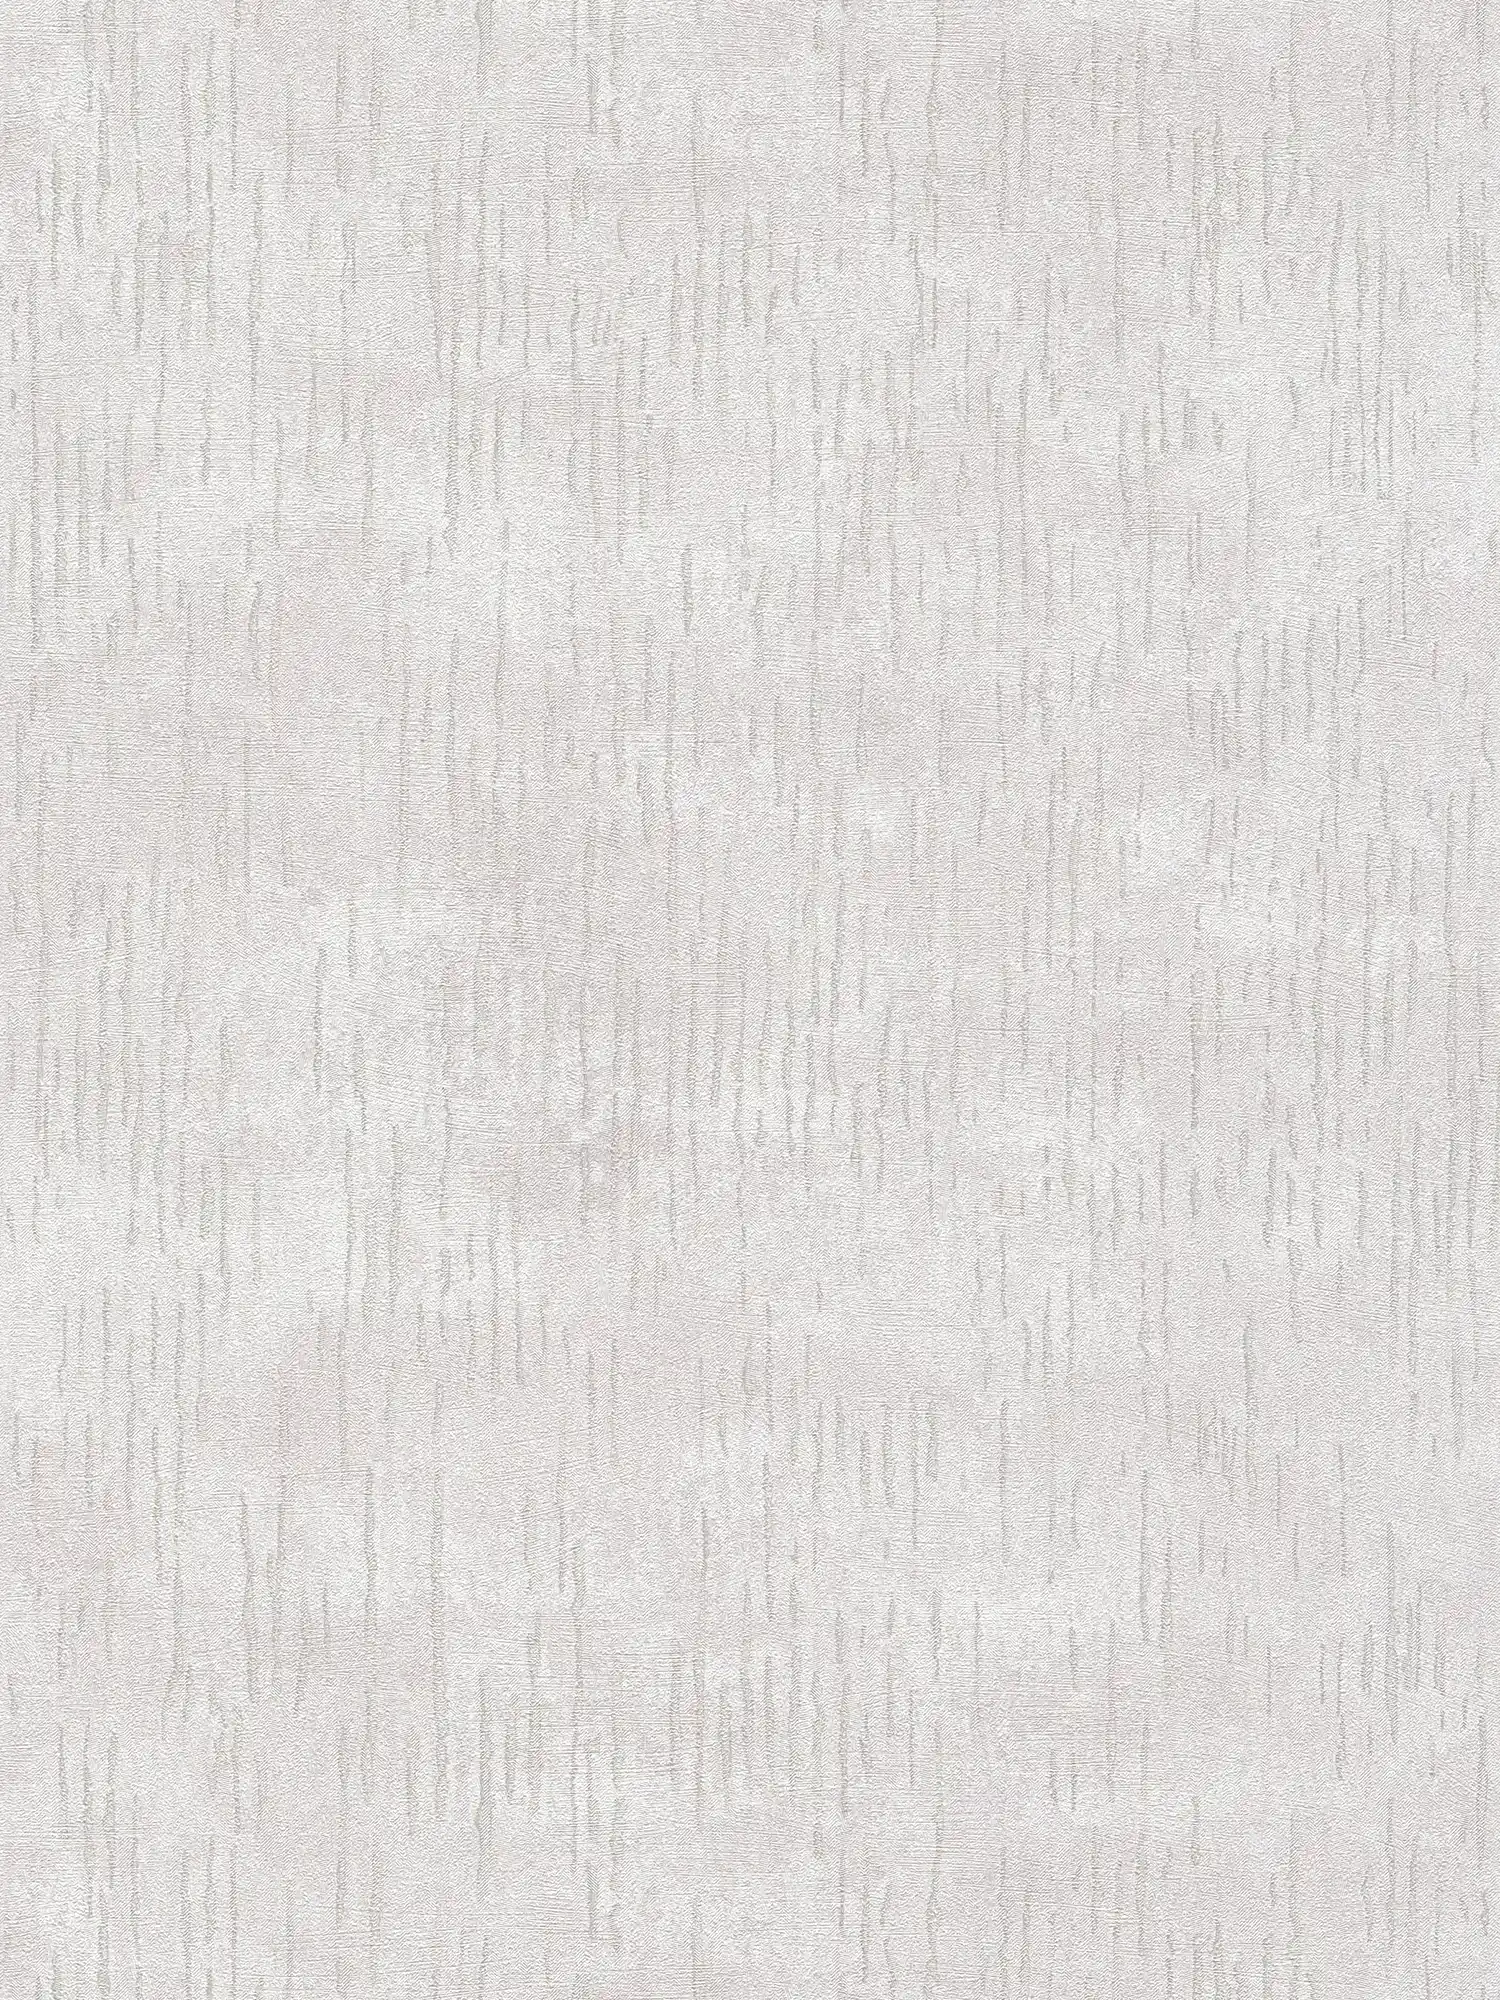 Glanzend structuurbehang met metallic patroon - beige, crème, metallic
